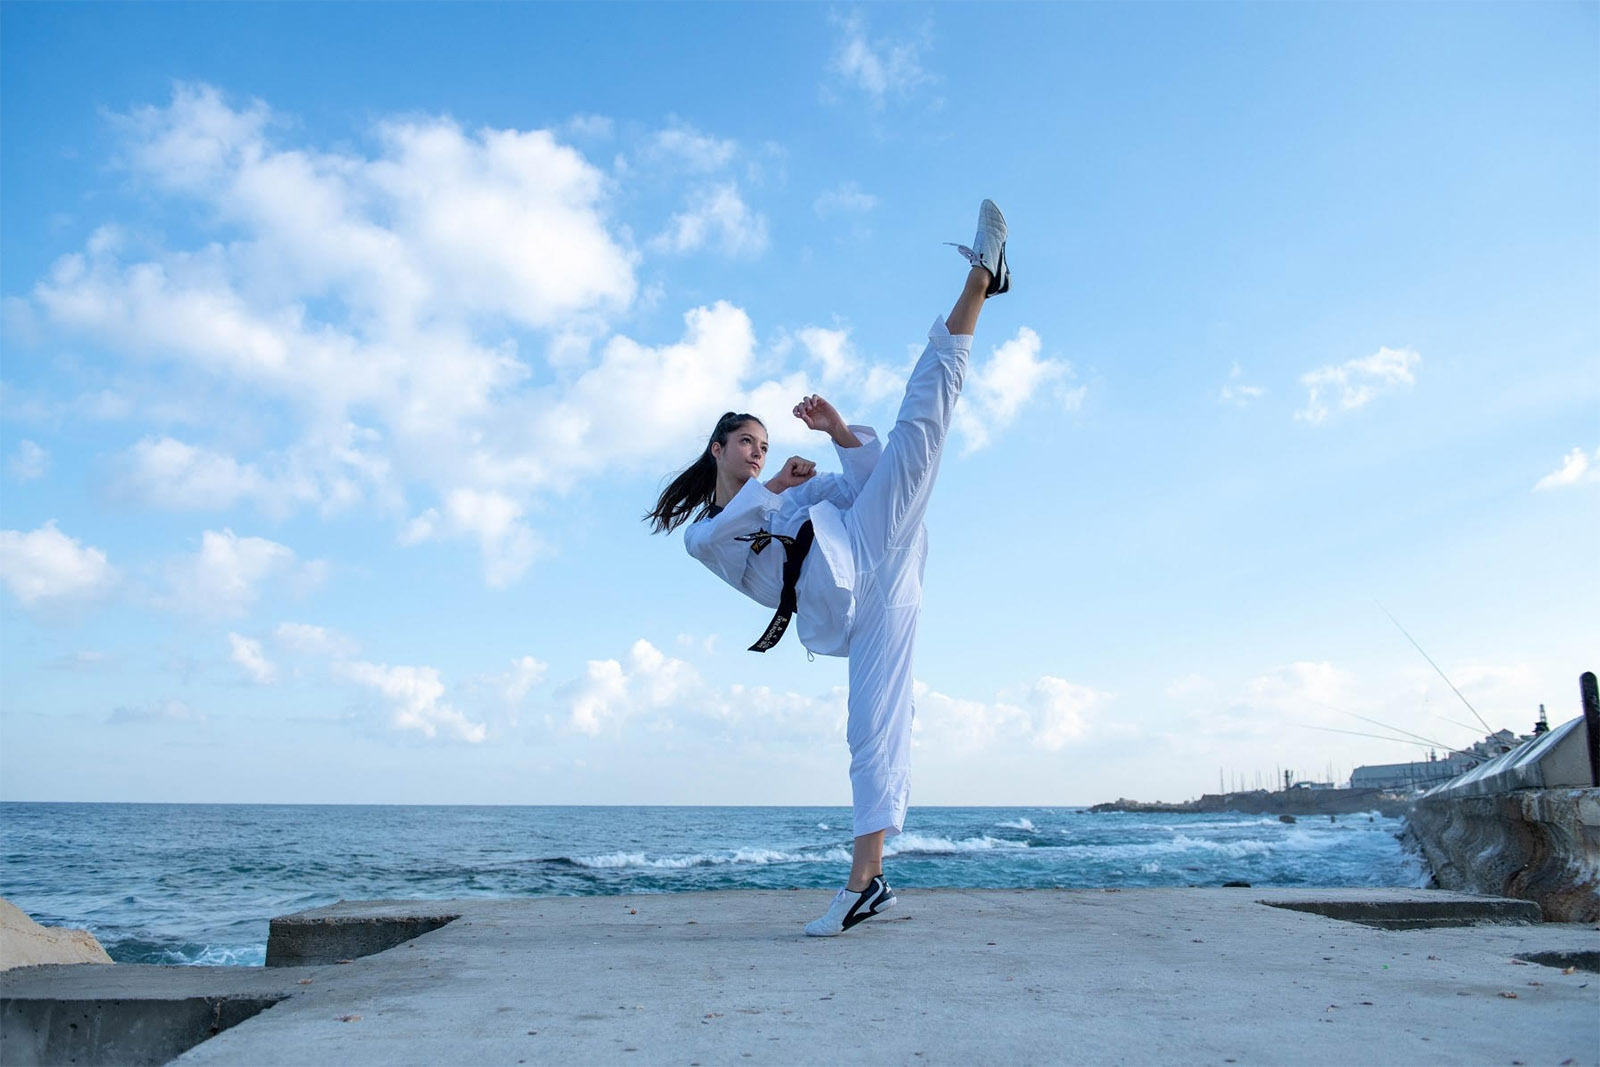 אבישג סמברג, אלופת אירופה בטאקוונדו: "רוצה להעפיל לאולימפיאדה בטוקיו" (צילום: יפעת זיילר)